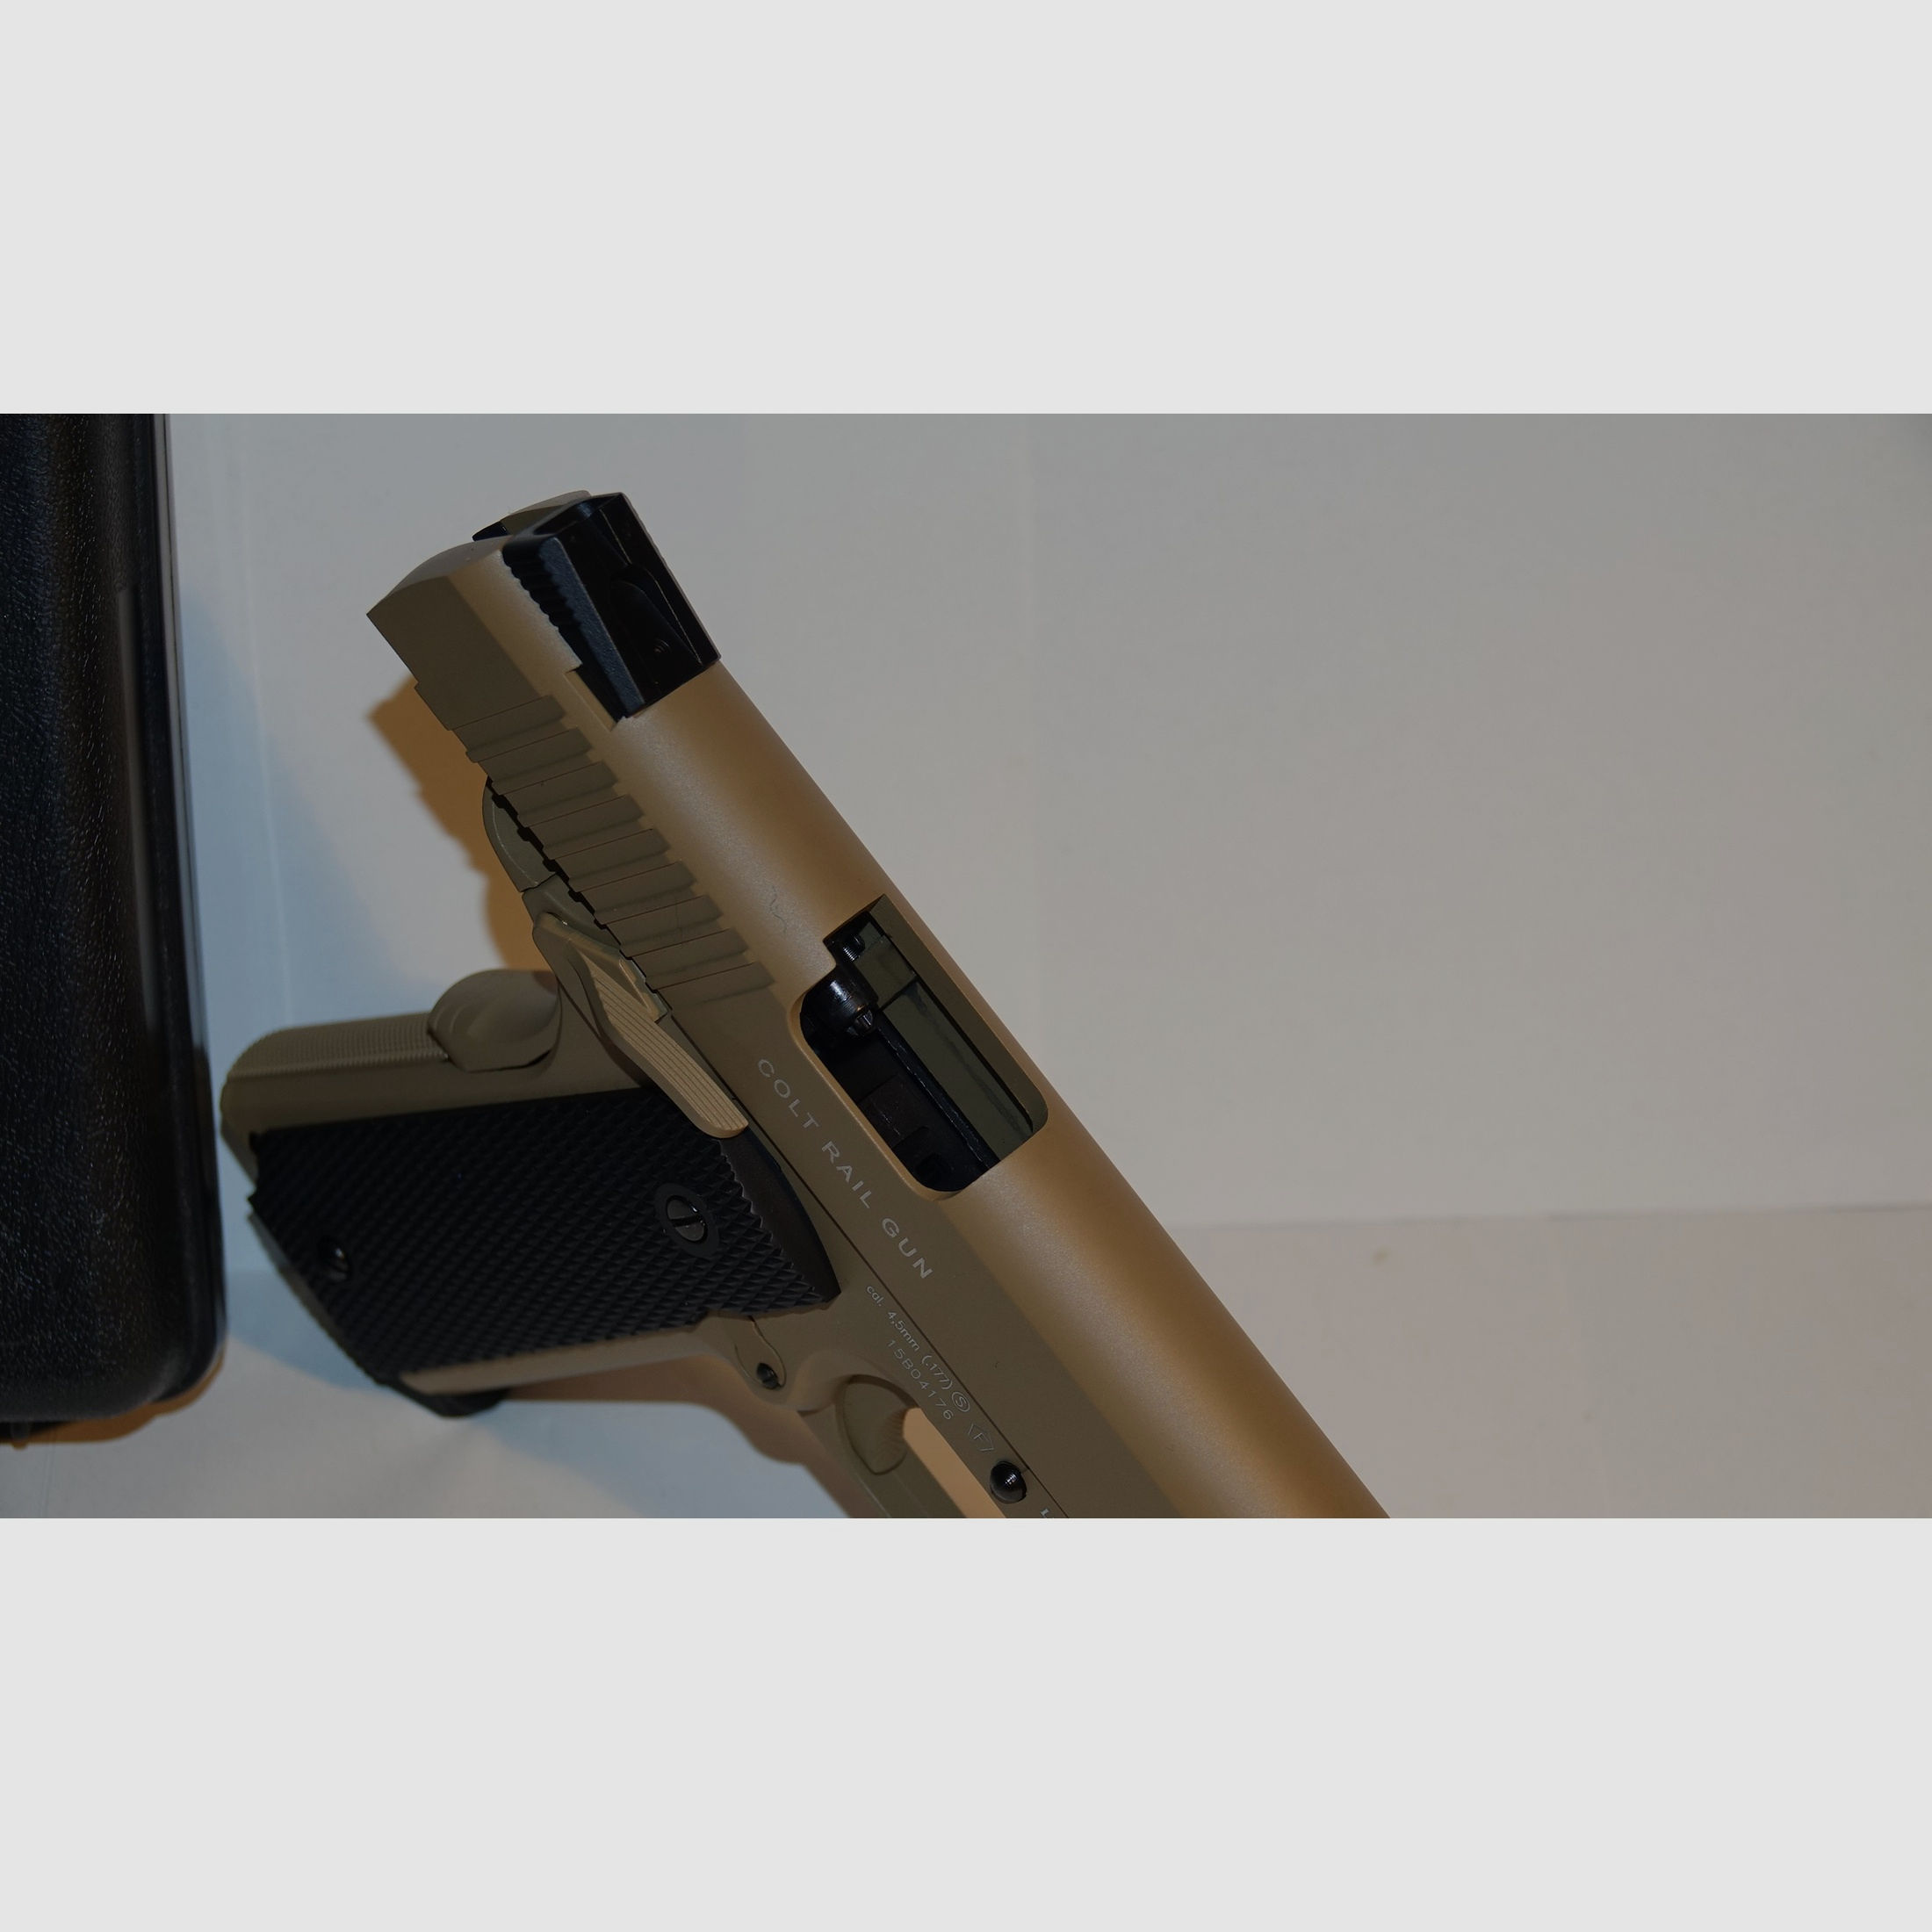 Colt M45 CQBP CO2 Pistole in seltenem TAN BEIGE neuwertig